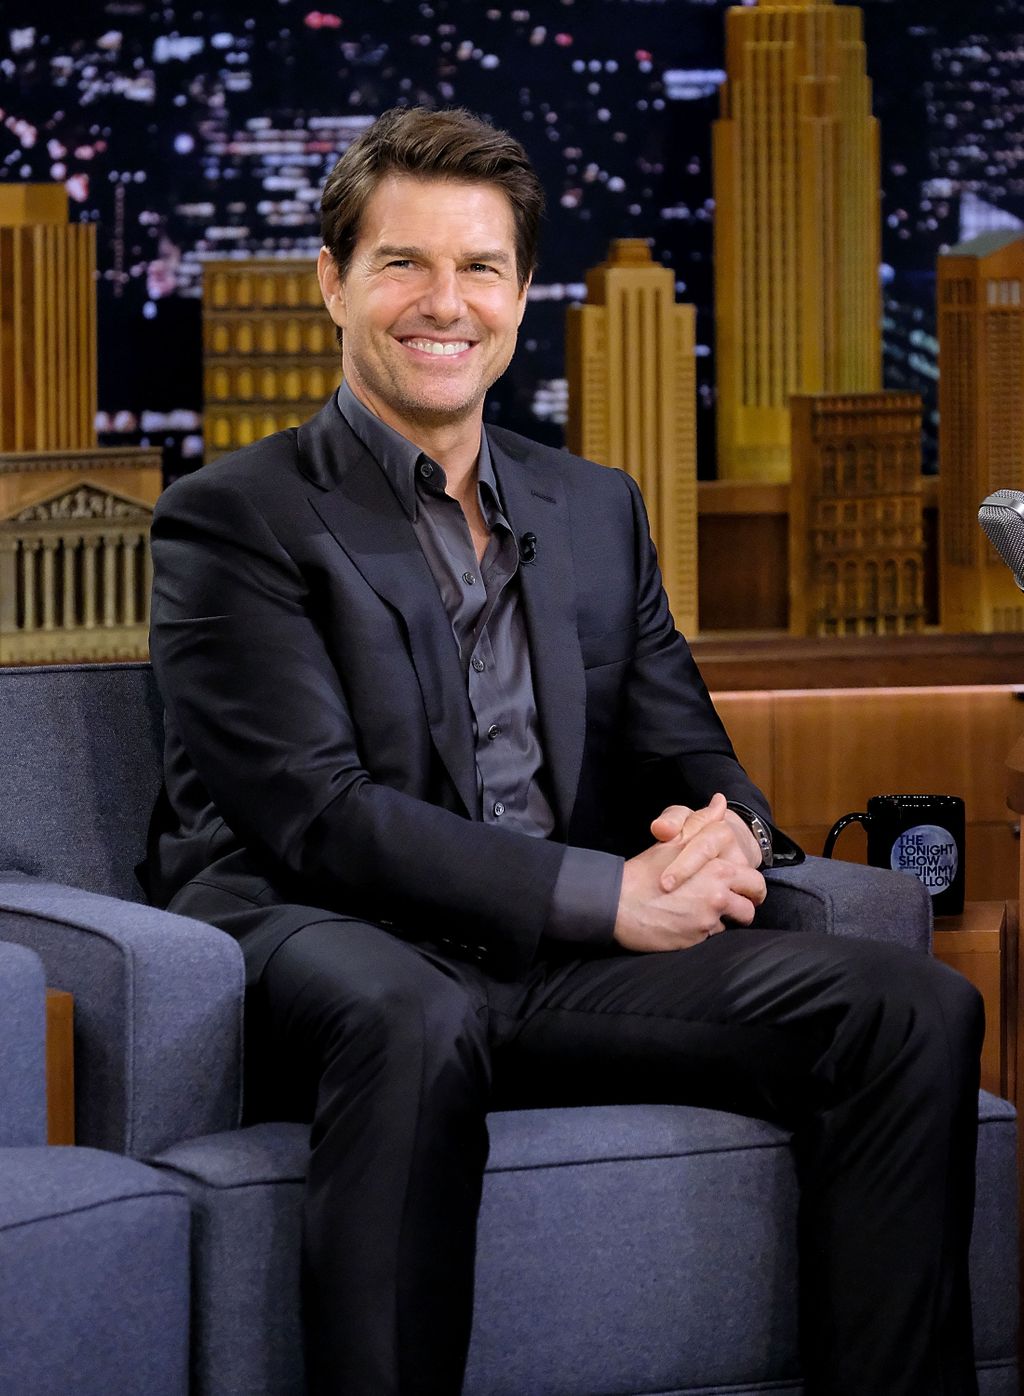 Tom Cruise-t kisebb mérete miatt folyton szekálták az iskolában, sőt, a nagyobb fiúk rendszeresen megverték őt emiatt. Diszlexiáját is sokan kinevették, nehéz időszakon ment keresztül egész fiatalon.